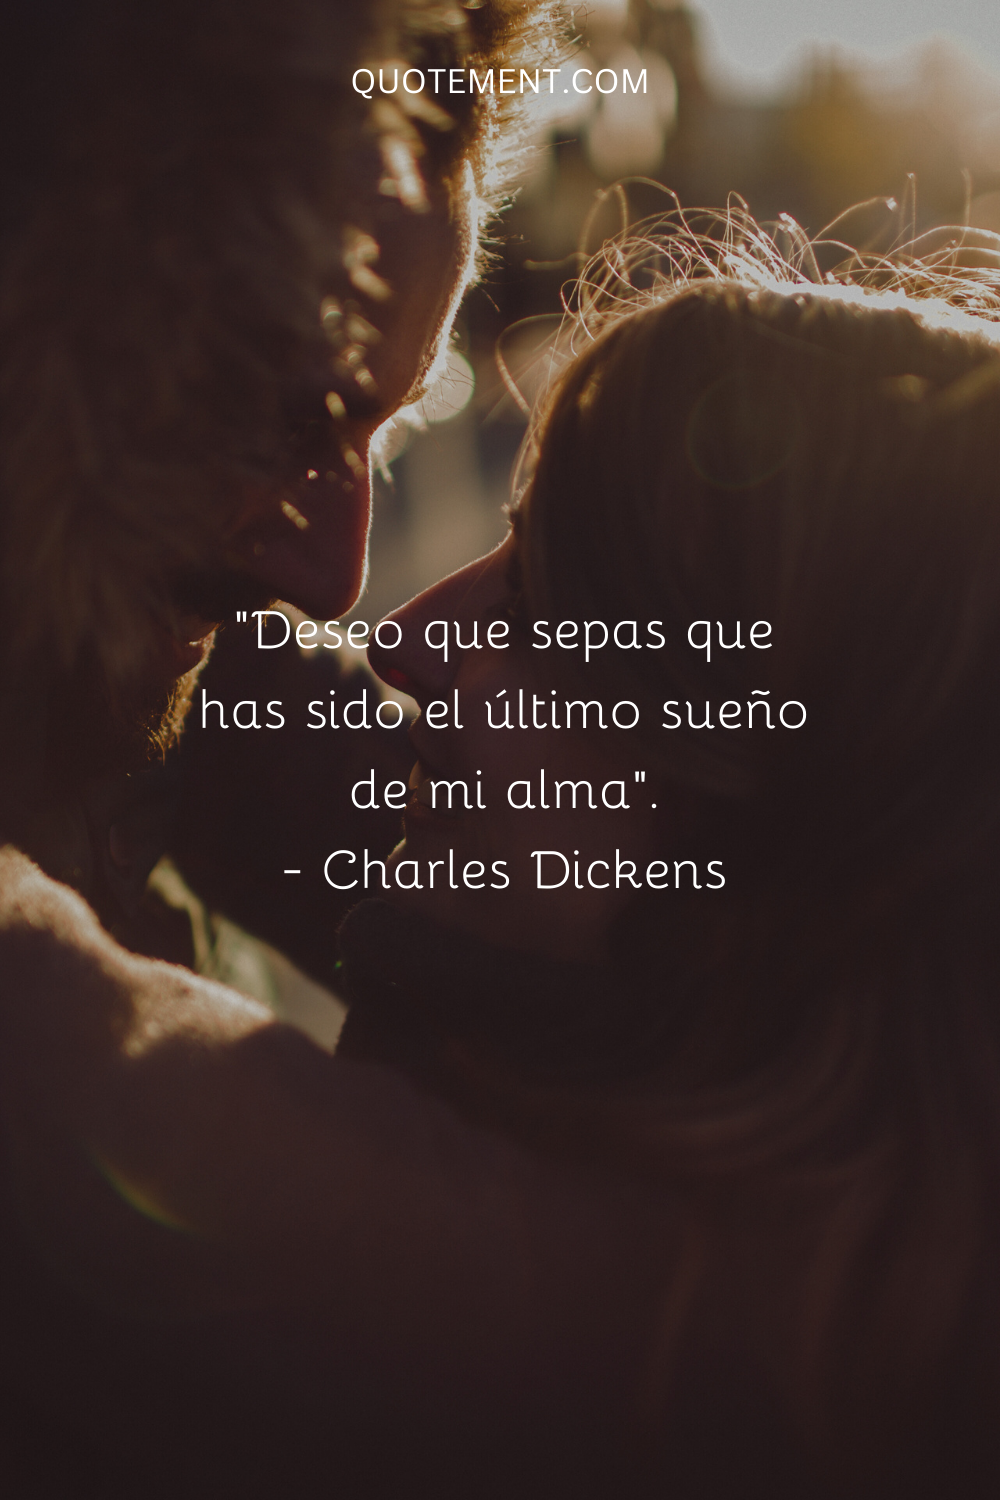 "Deseo que sepas que has sido el último sueño de mi alma". - Charles Dickens